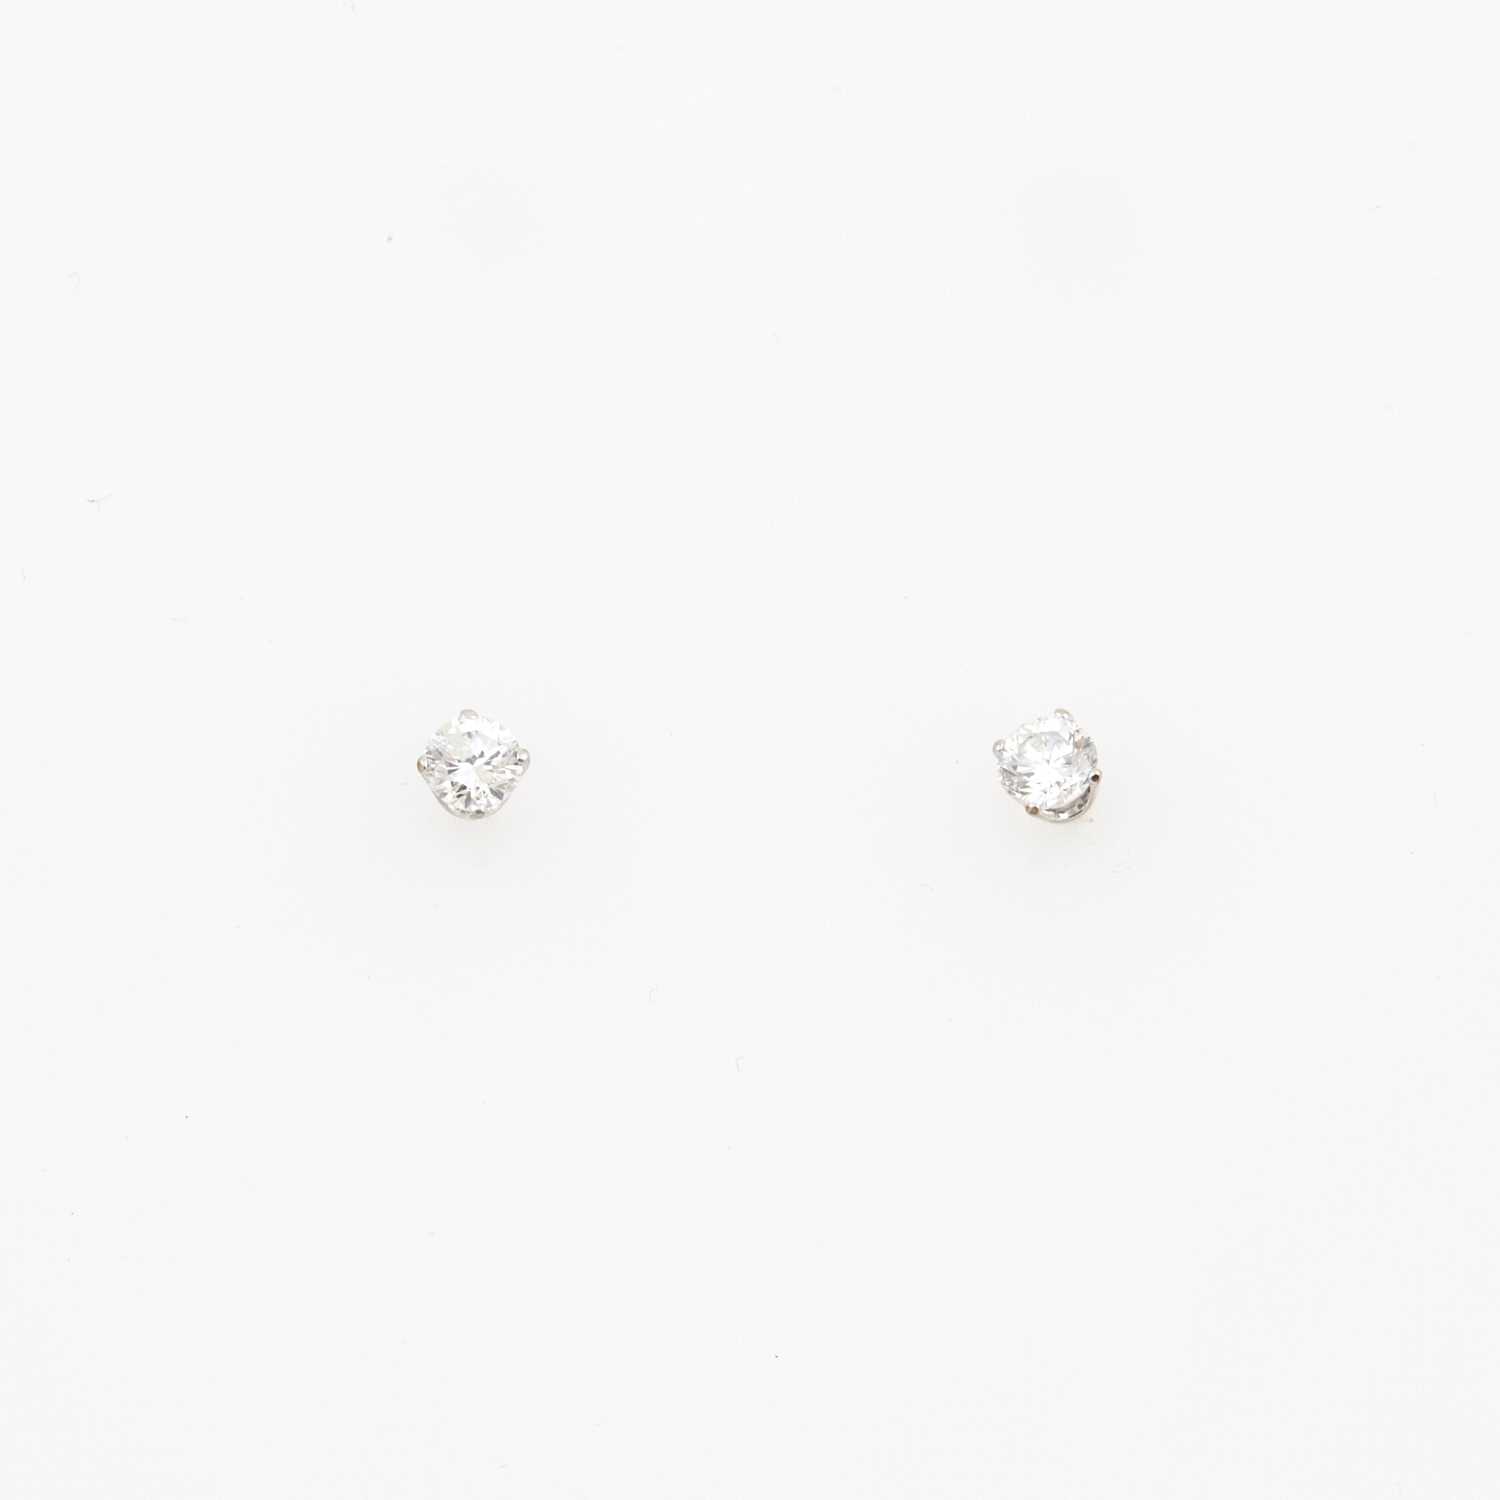 Lot 174 - Two Diamond Earrings about 0.50 ct., 14K